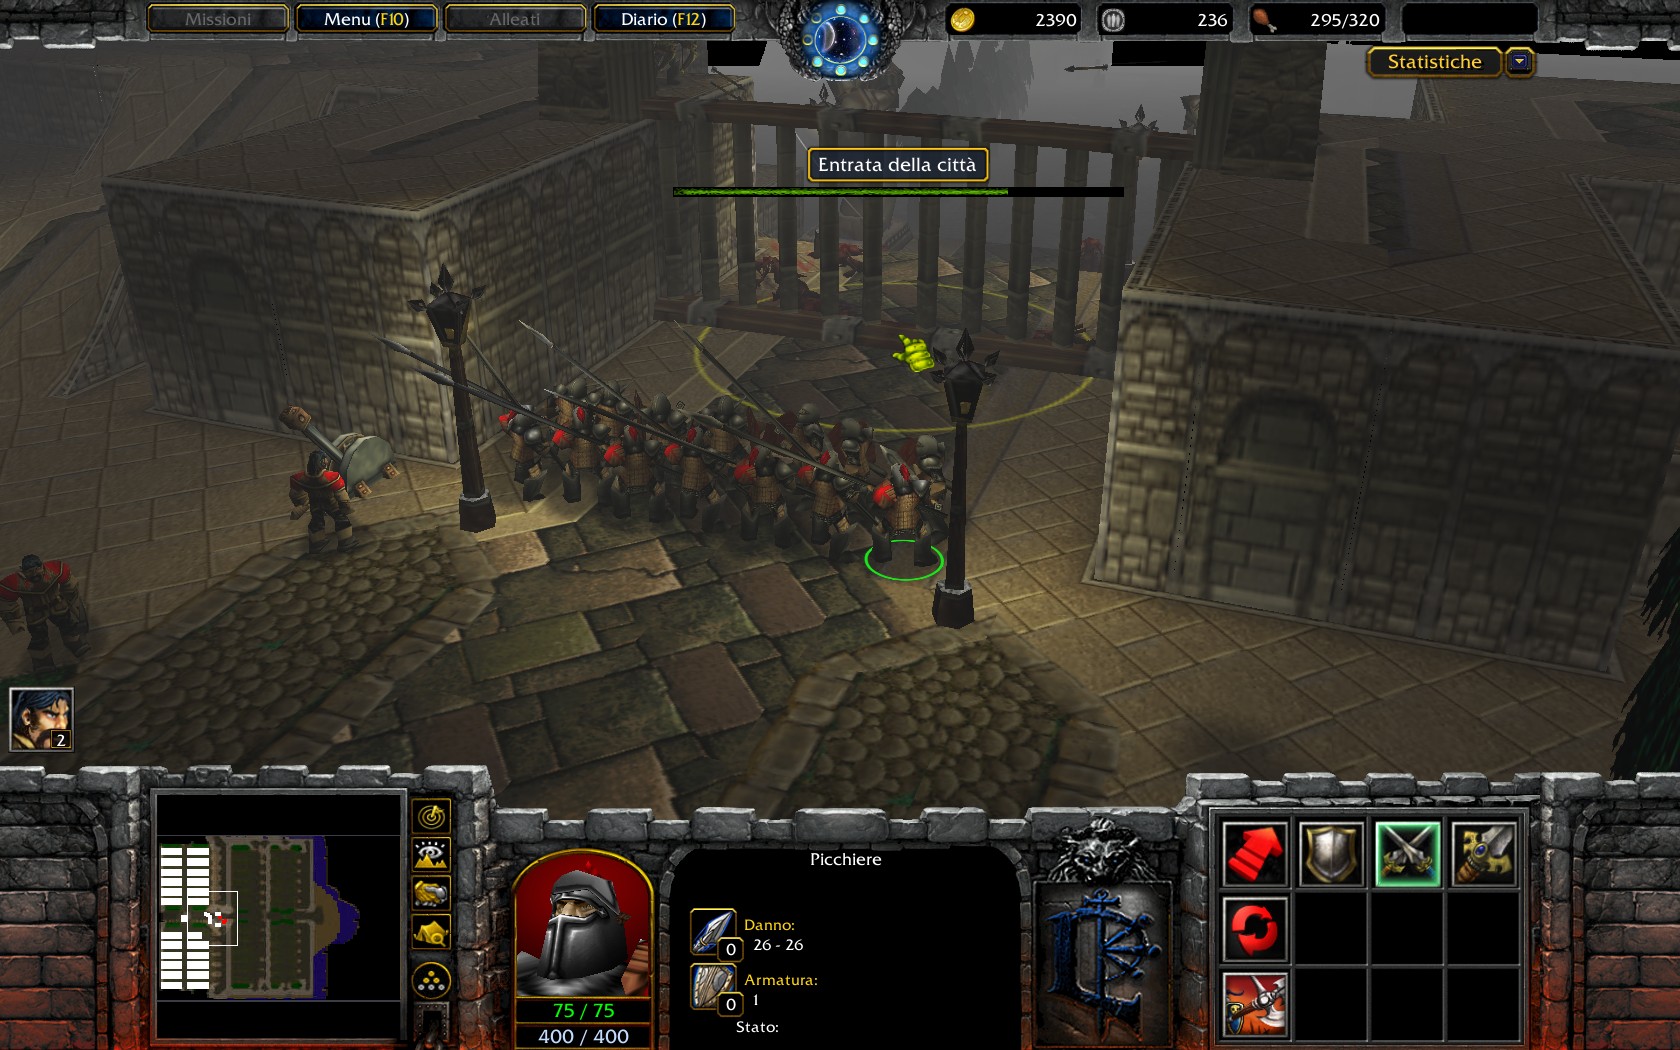 Mountainpass Fortress Screenshot13